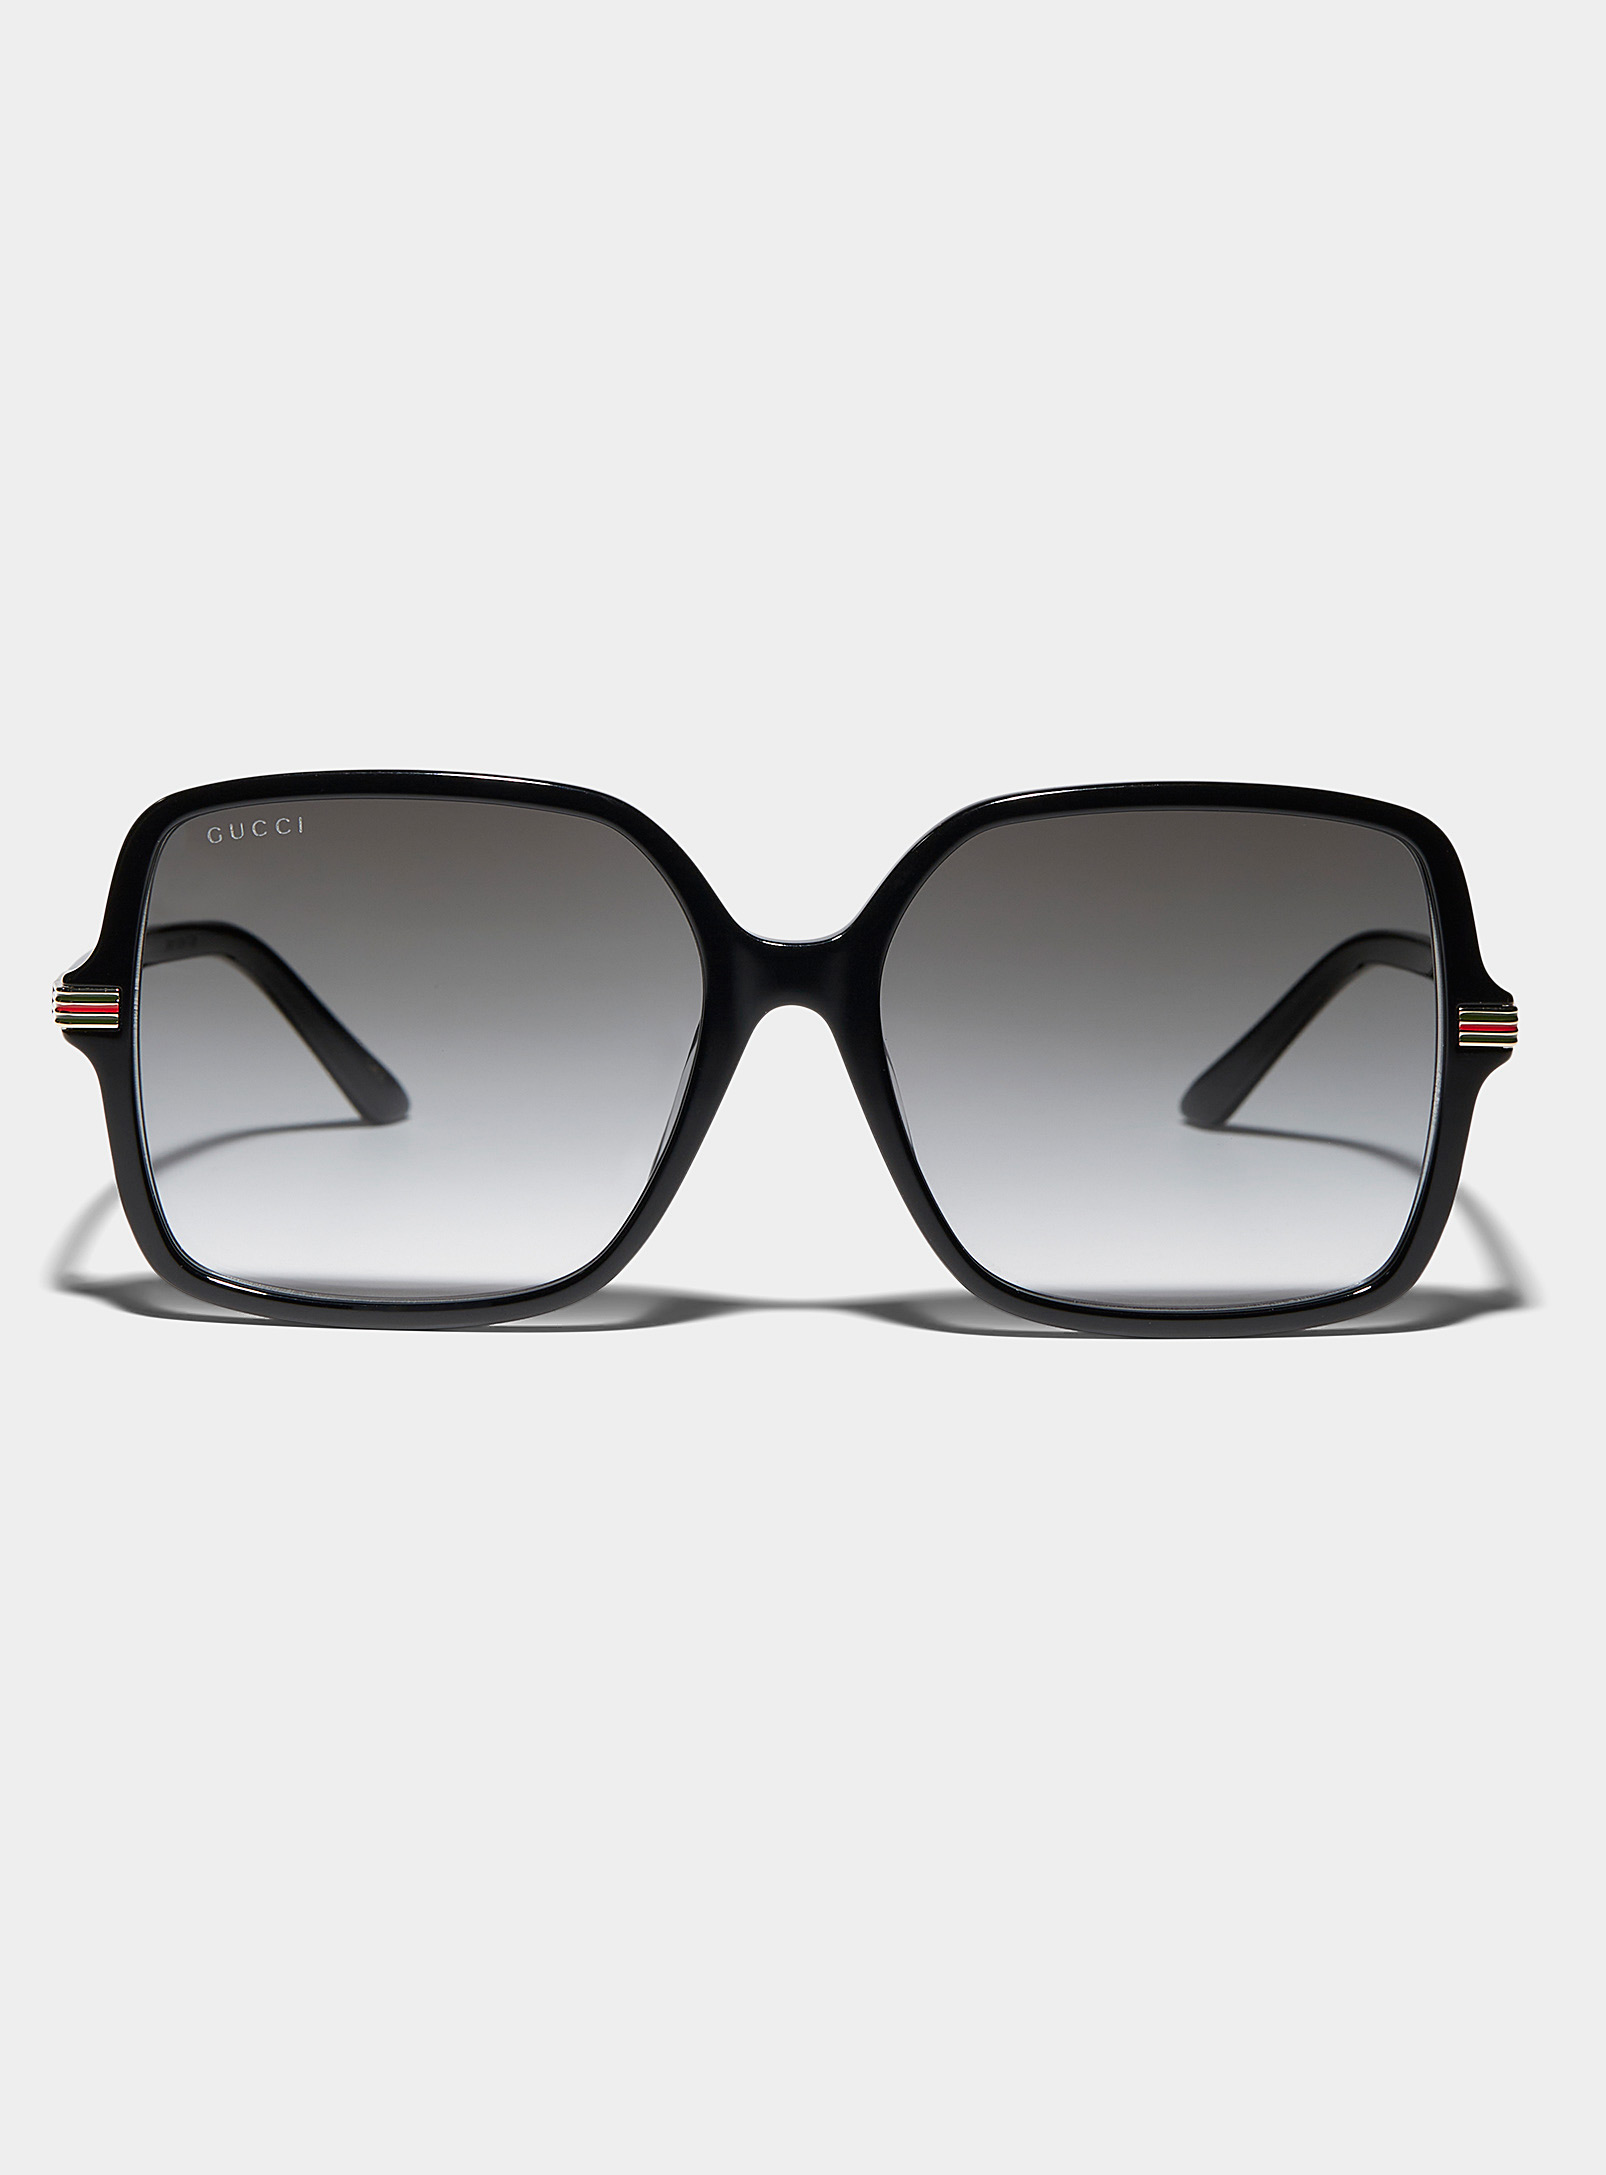 Gucci - Women's Archive stripes square sunglasses